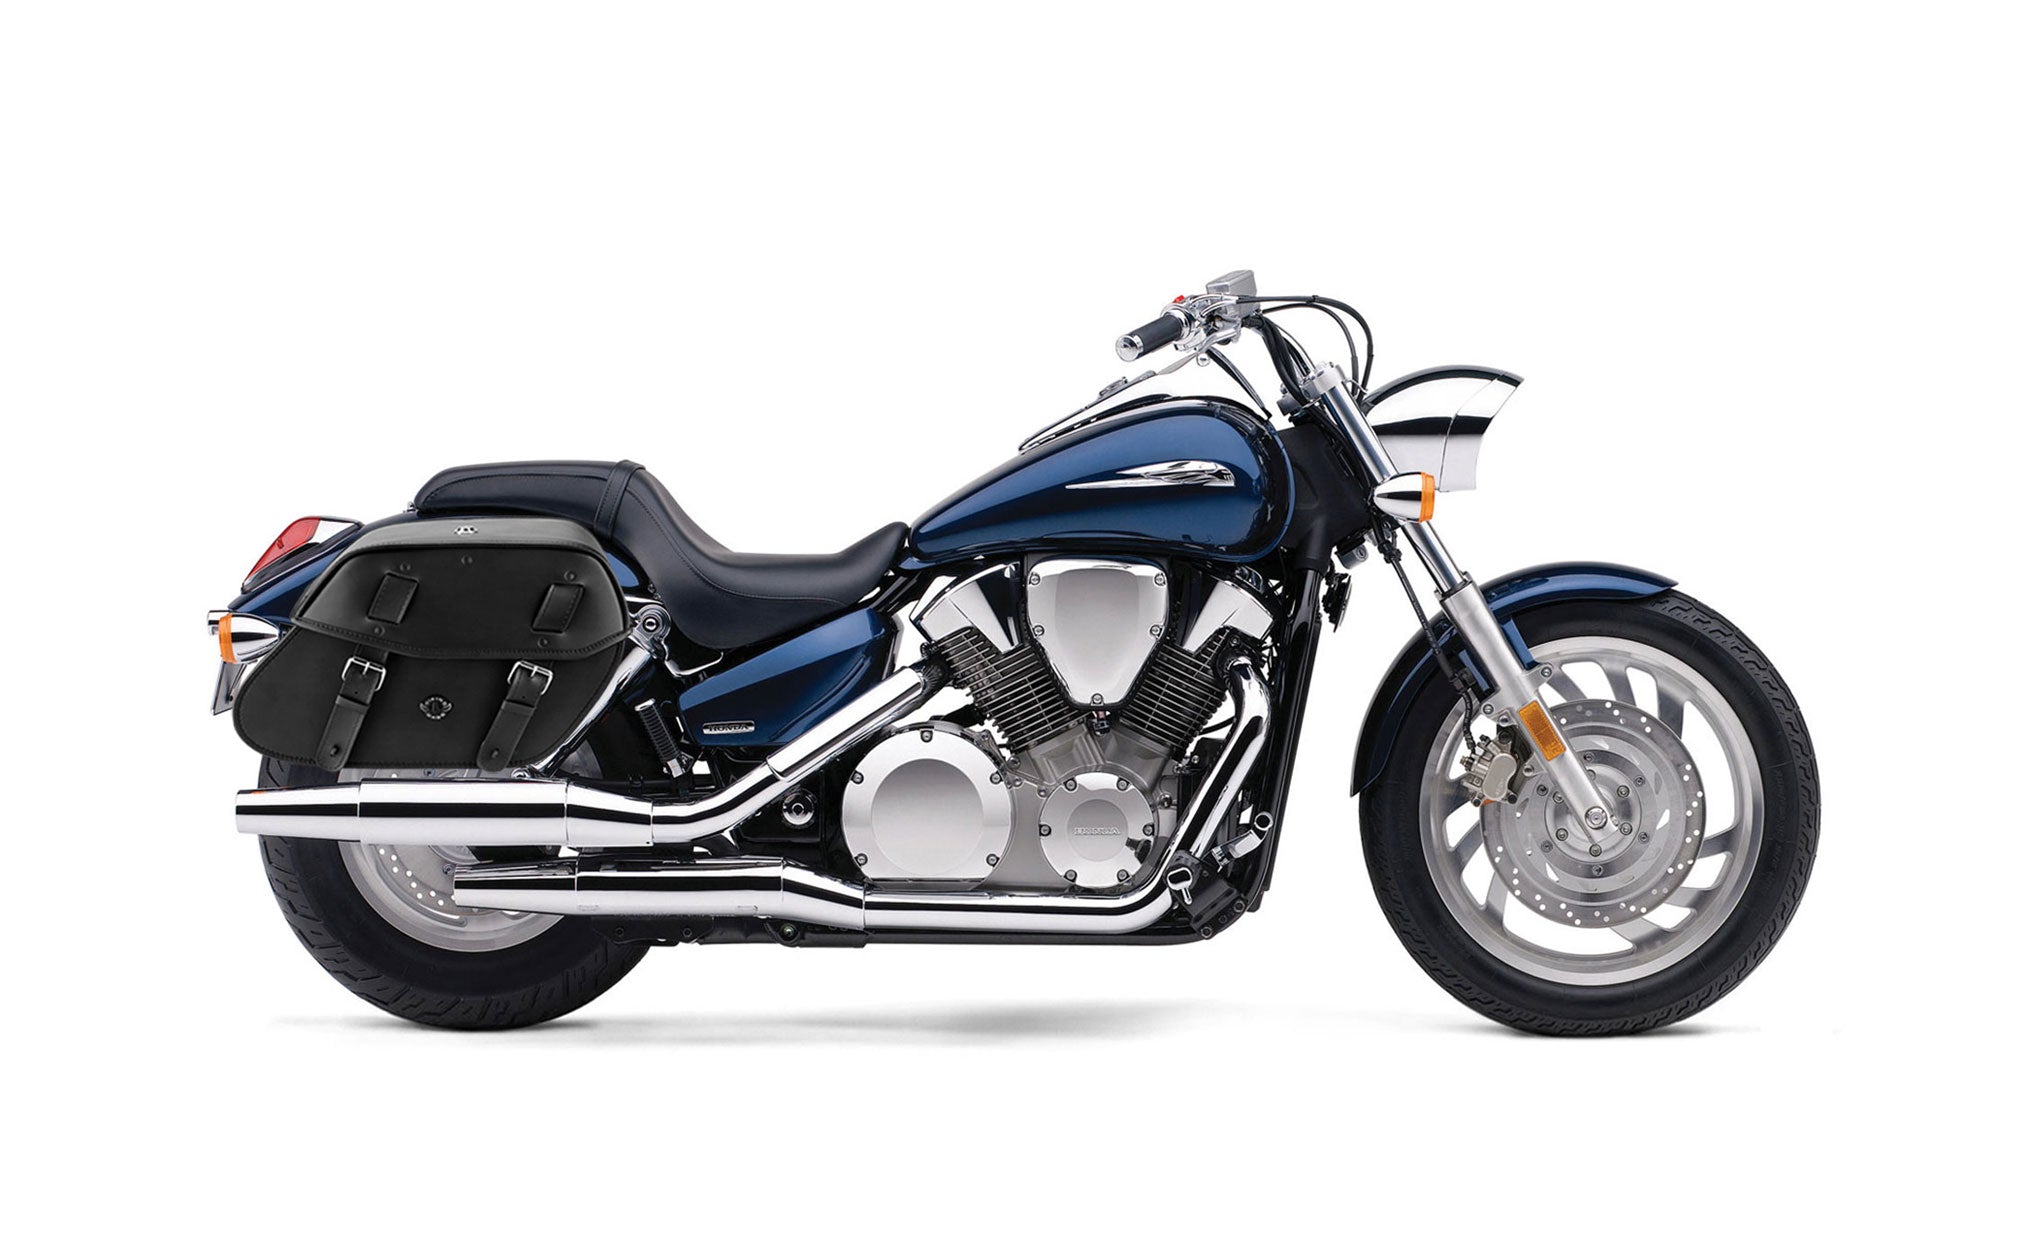 Viking Odin Large Honda Vtx 1300 C Leather Motorcycle Saddlebags on Bike Photo @expand